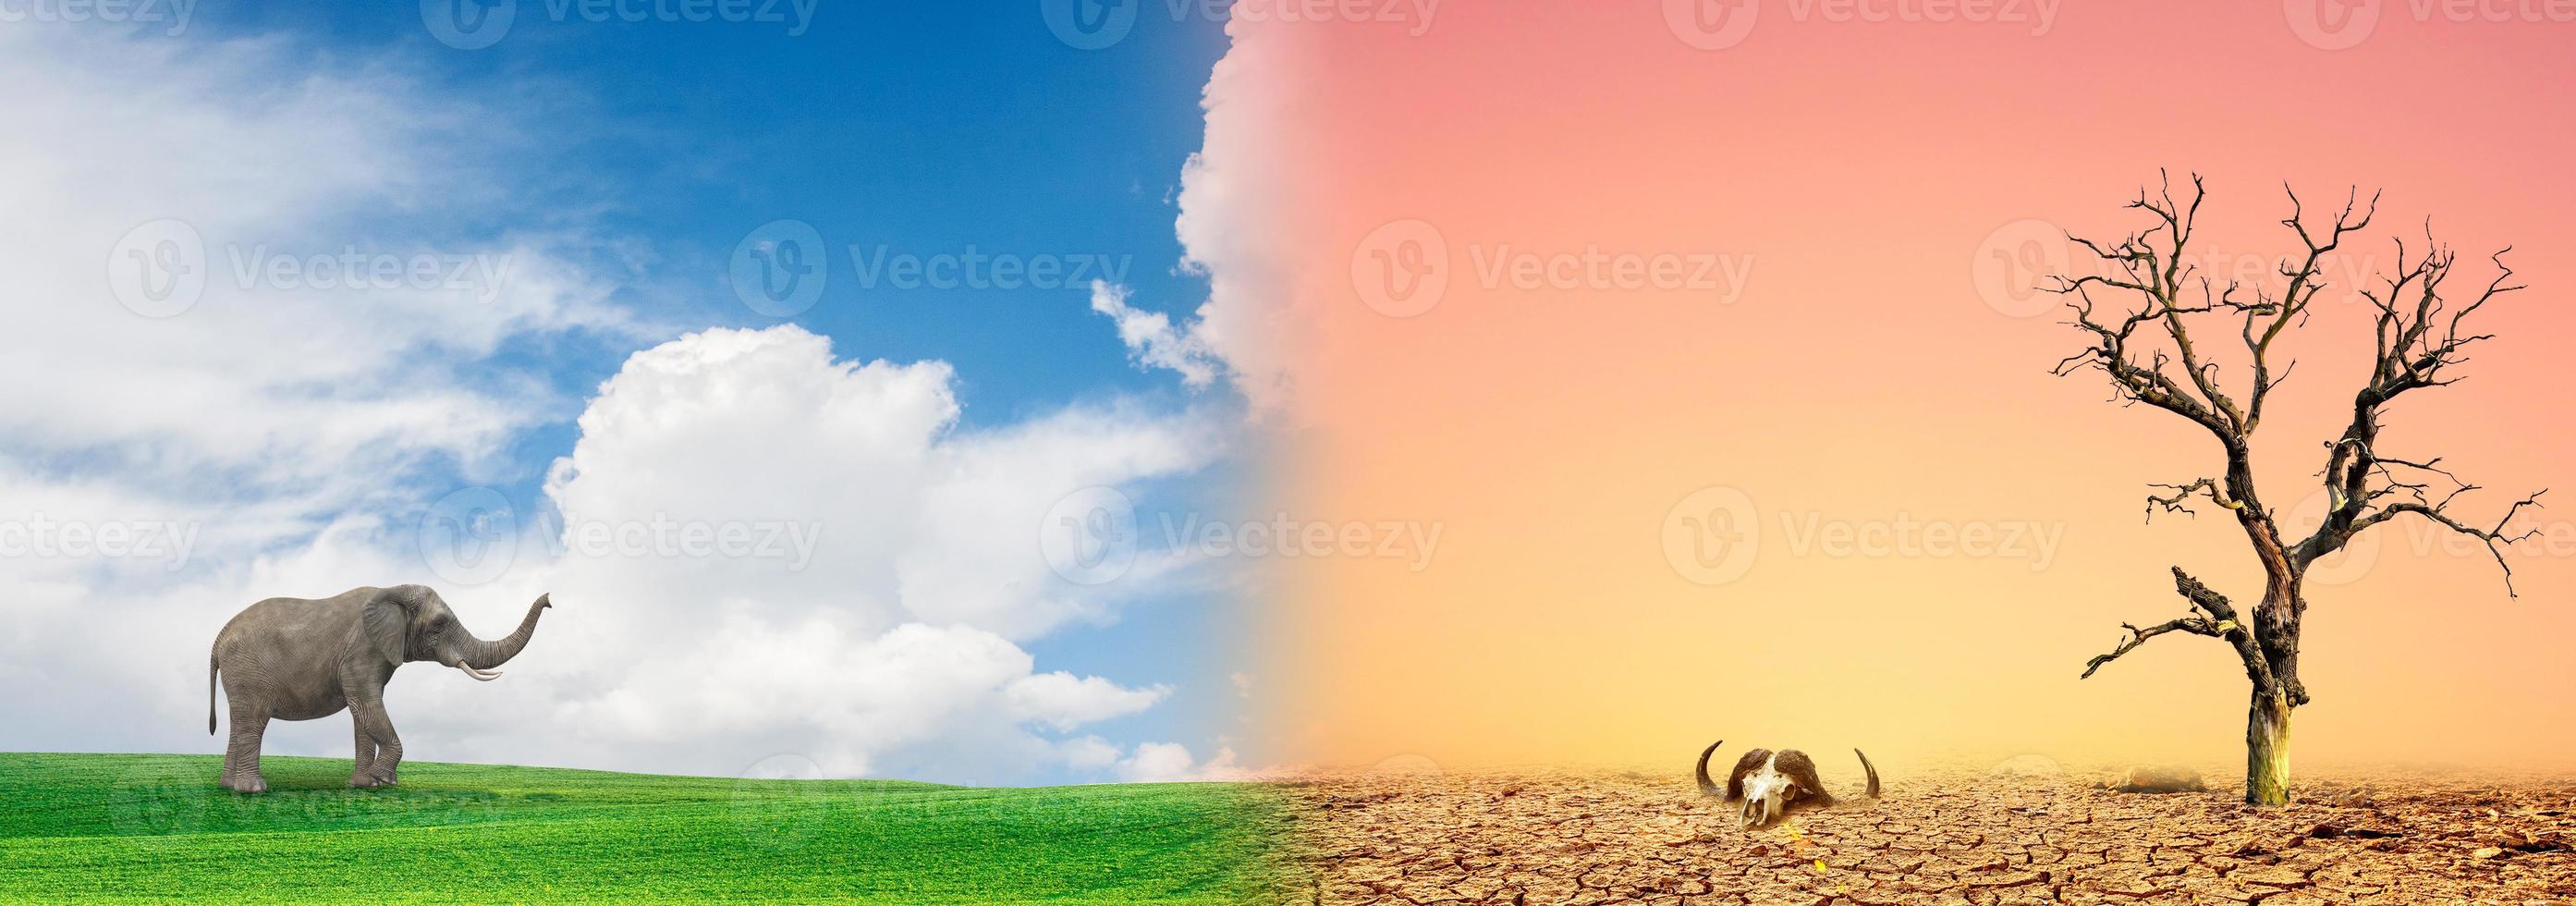 concetto di conservazione ambientale e cambiamento climatico globale. immagine che confronta le aree aride con le aree verdi. foto